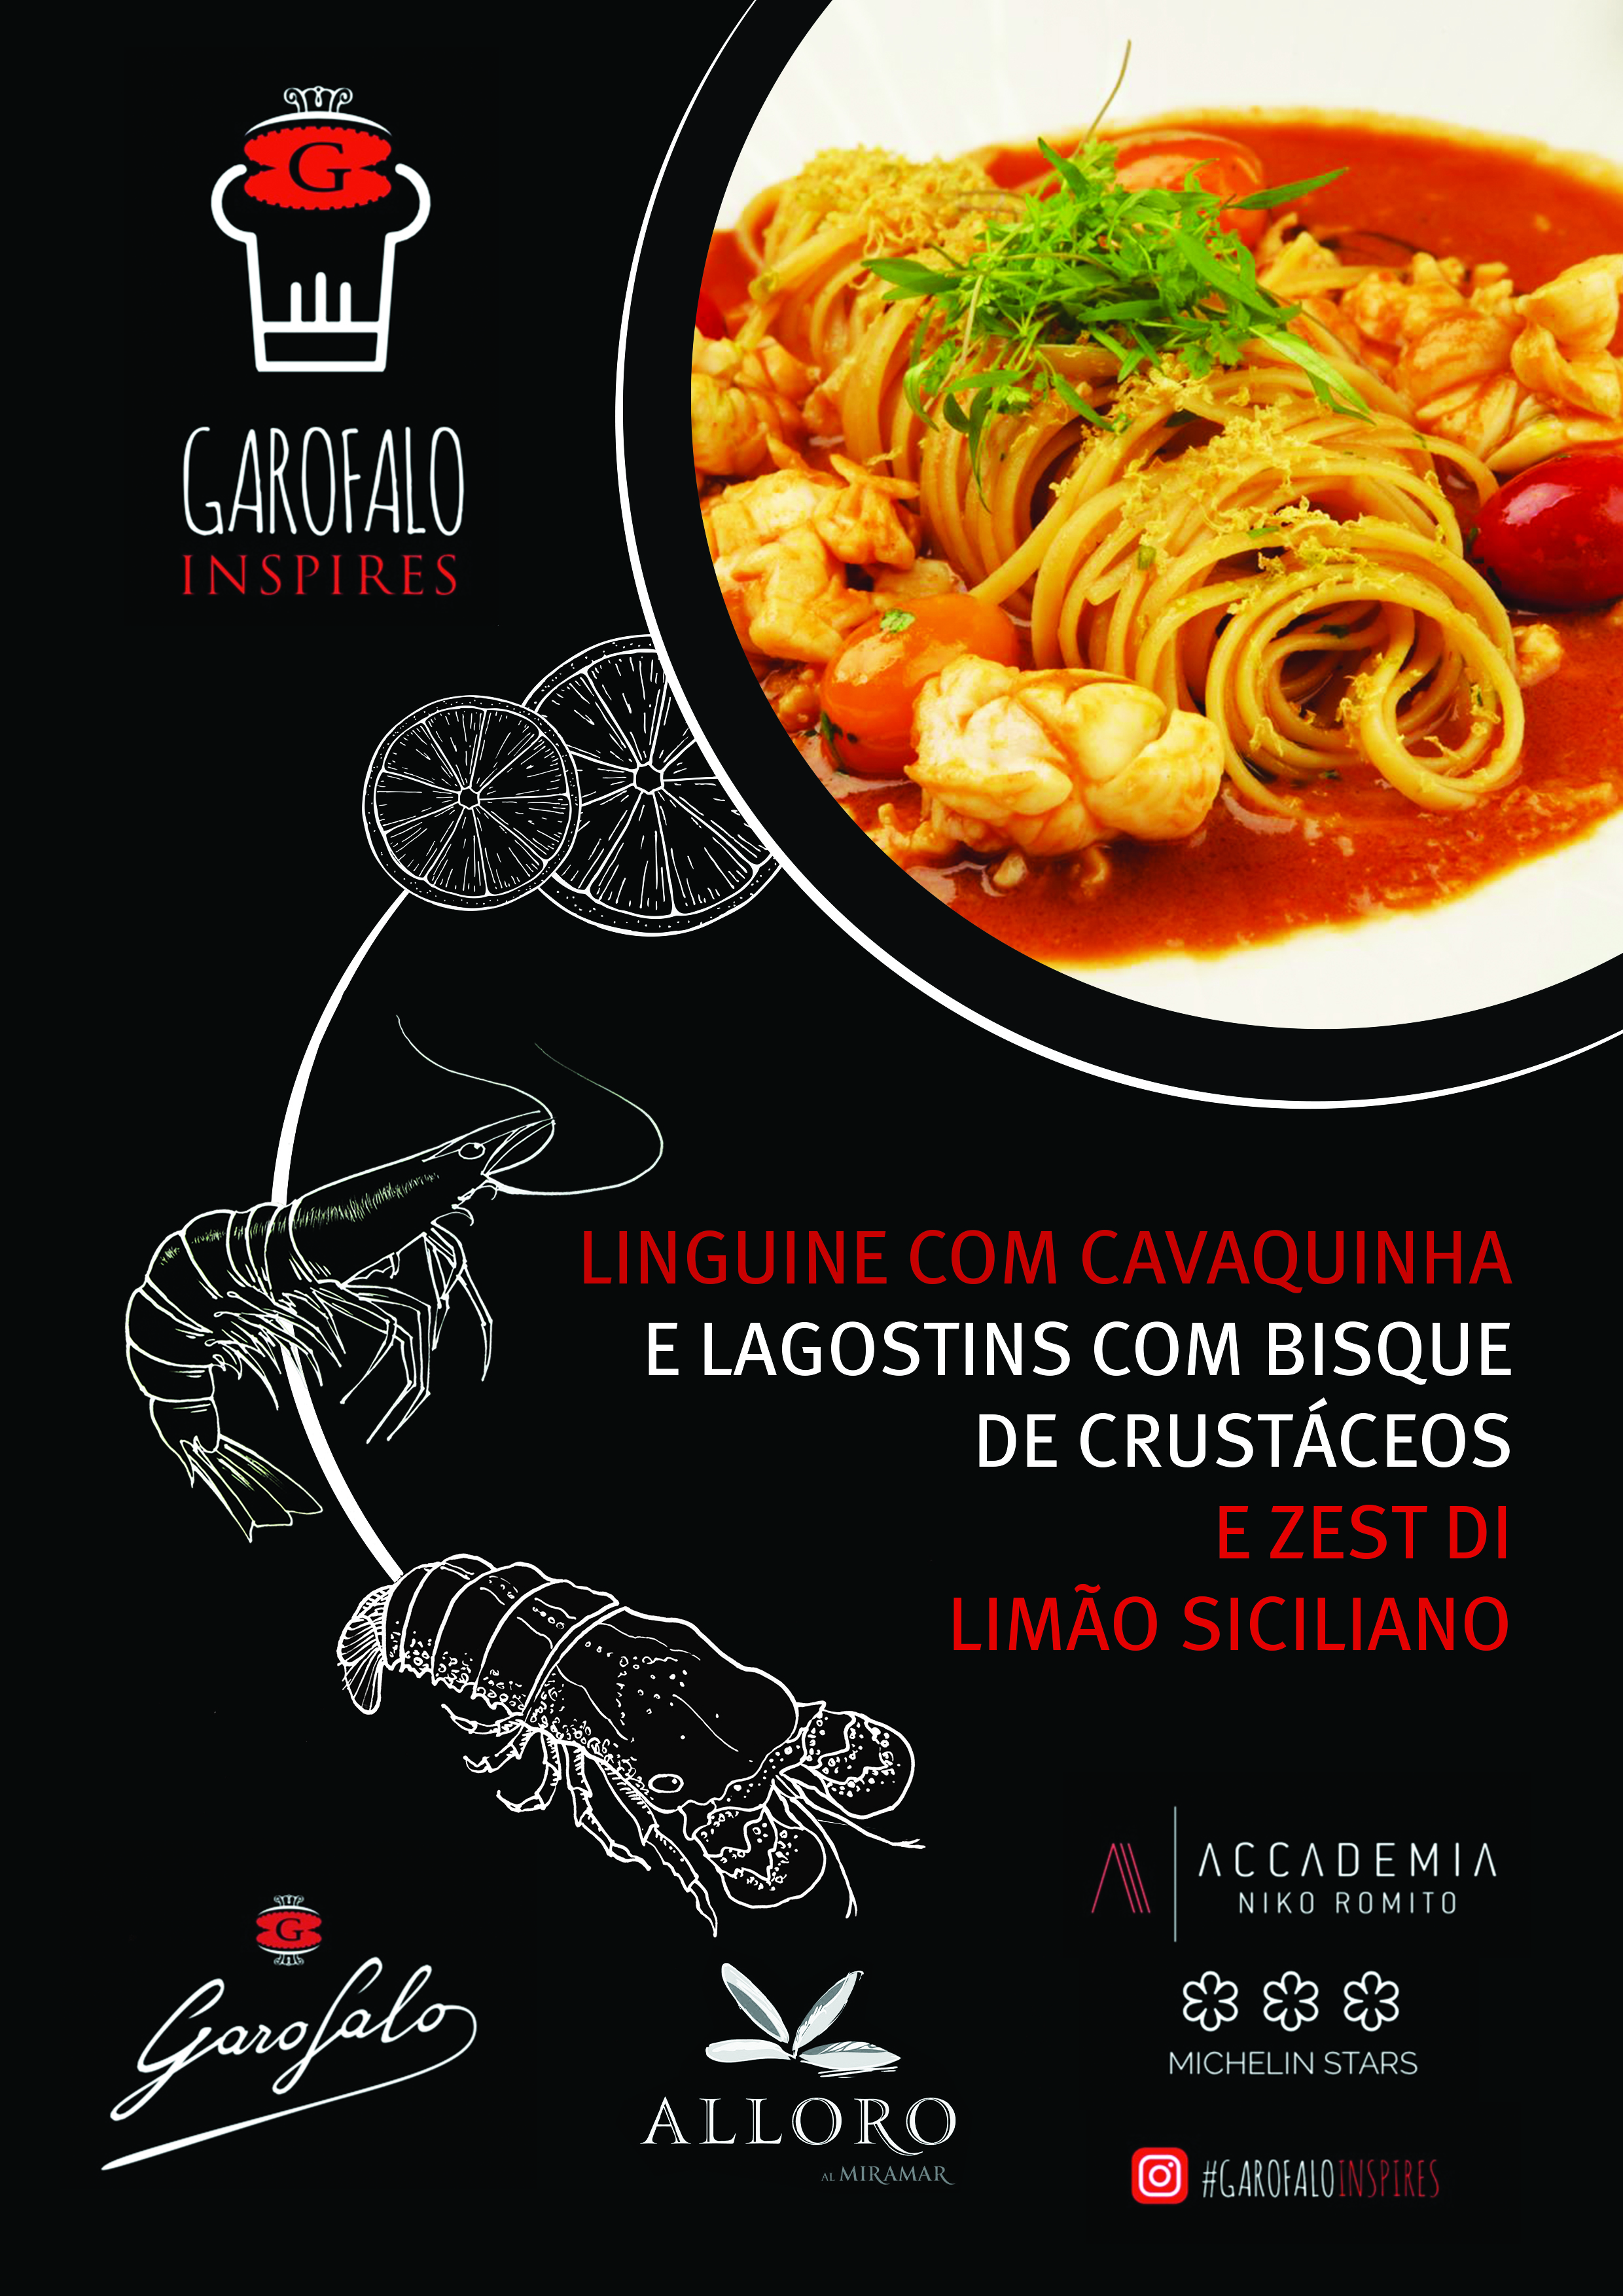 Garofalo - Linguine com cavaquinha e lagostins com bisque de crustáceos e zest di limão siciliano